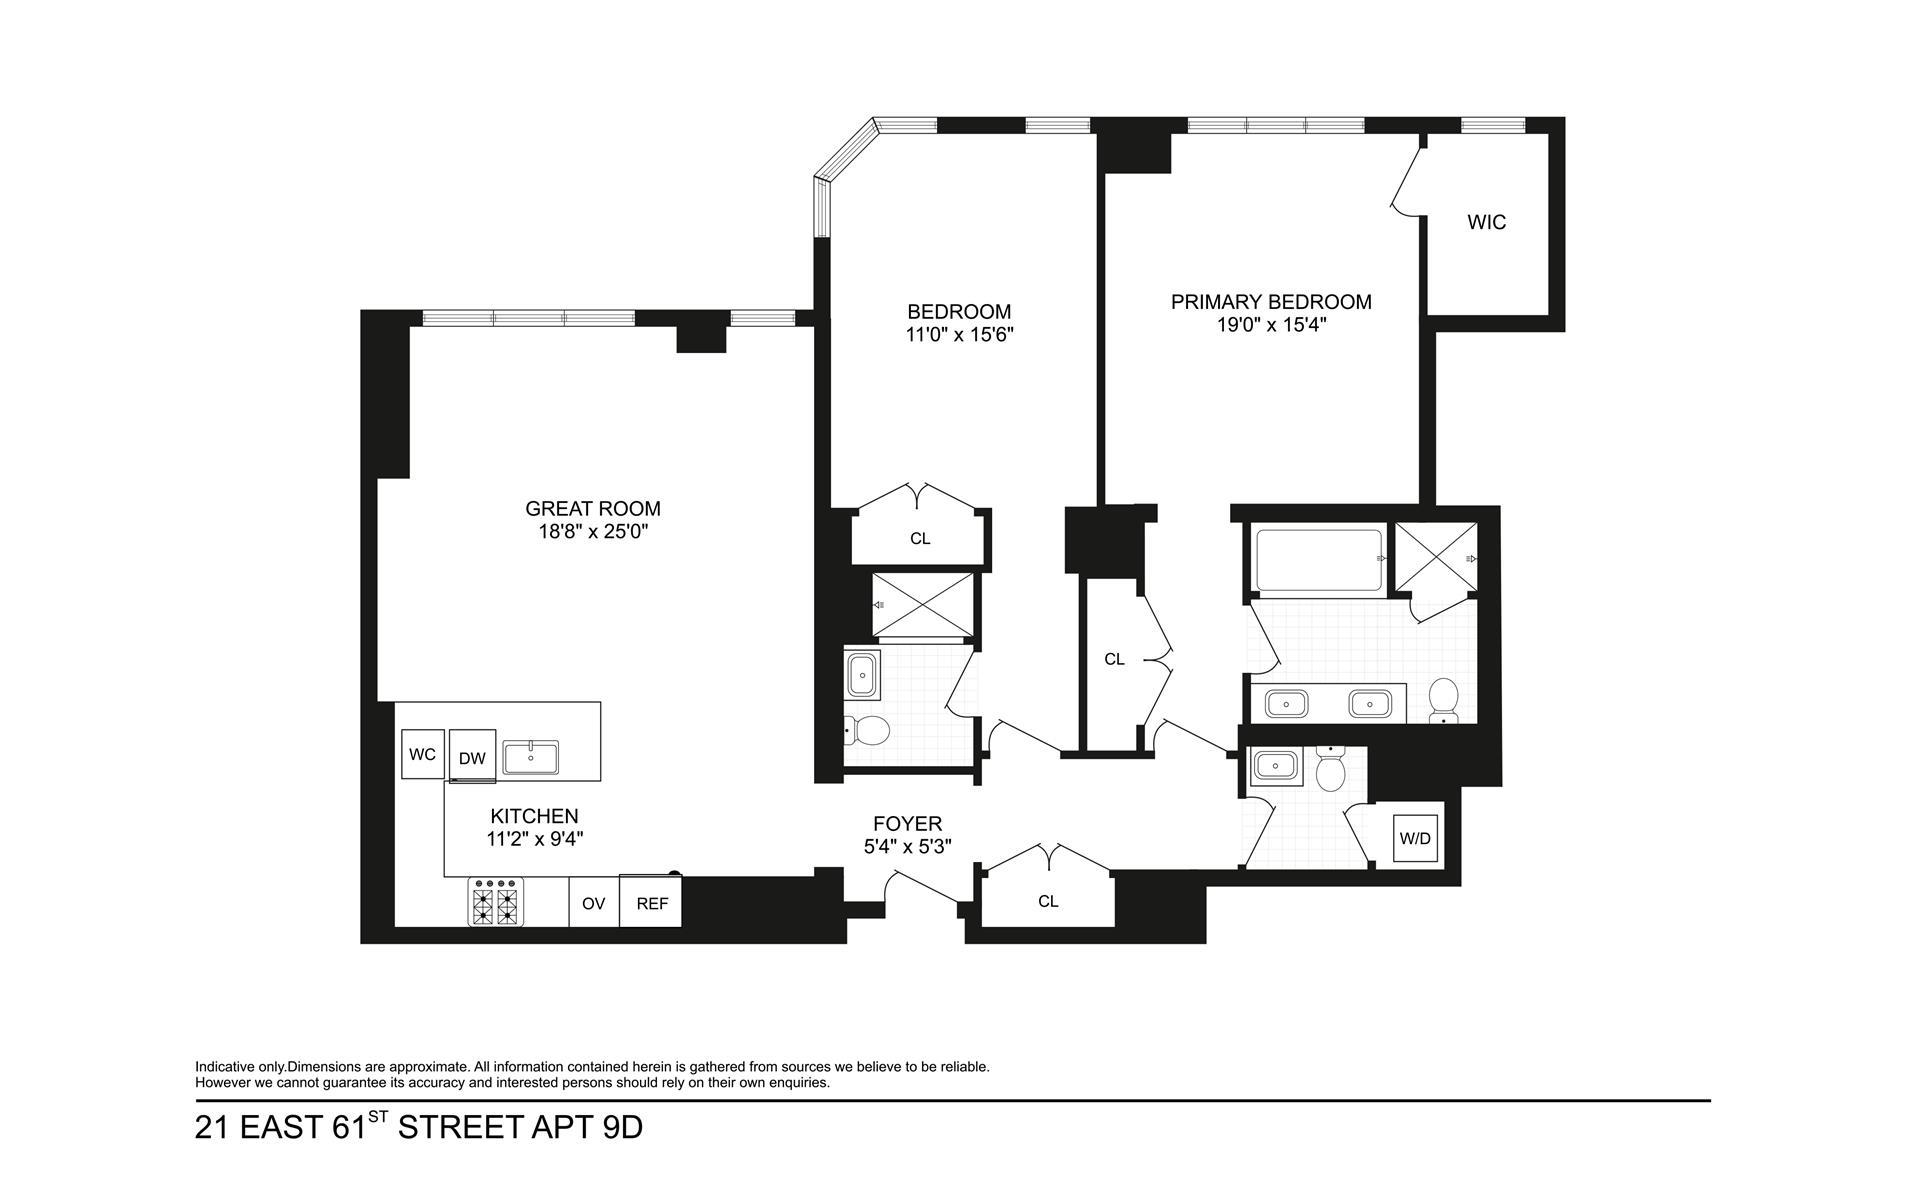 Floorplan for 21 East 61st Street, 9D